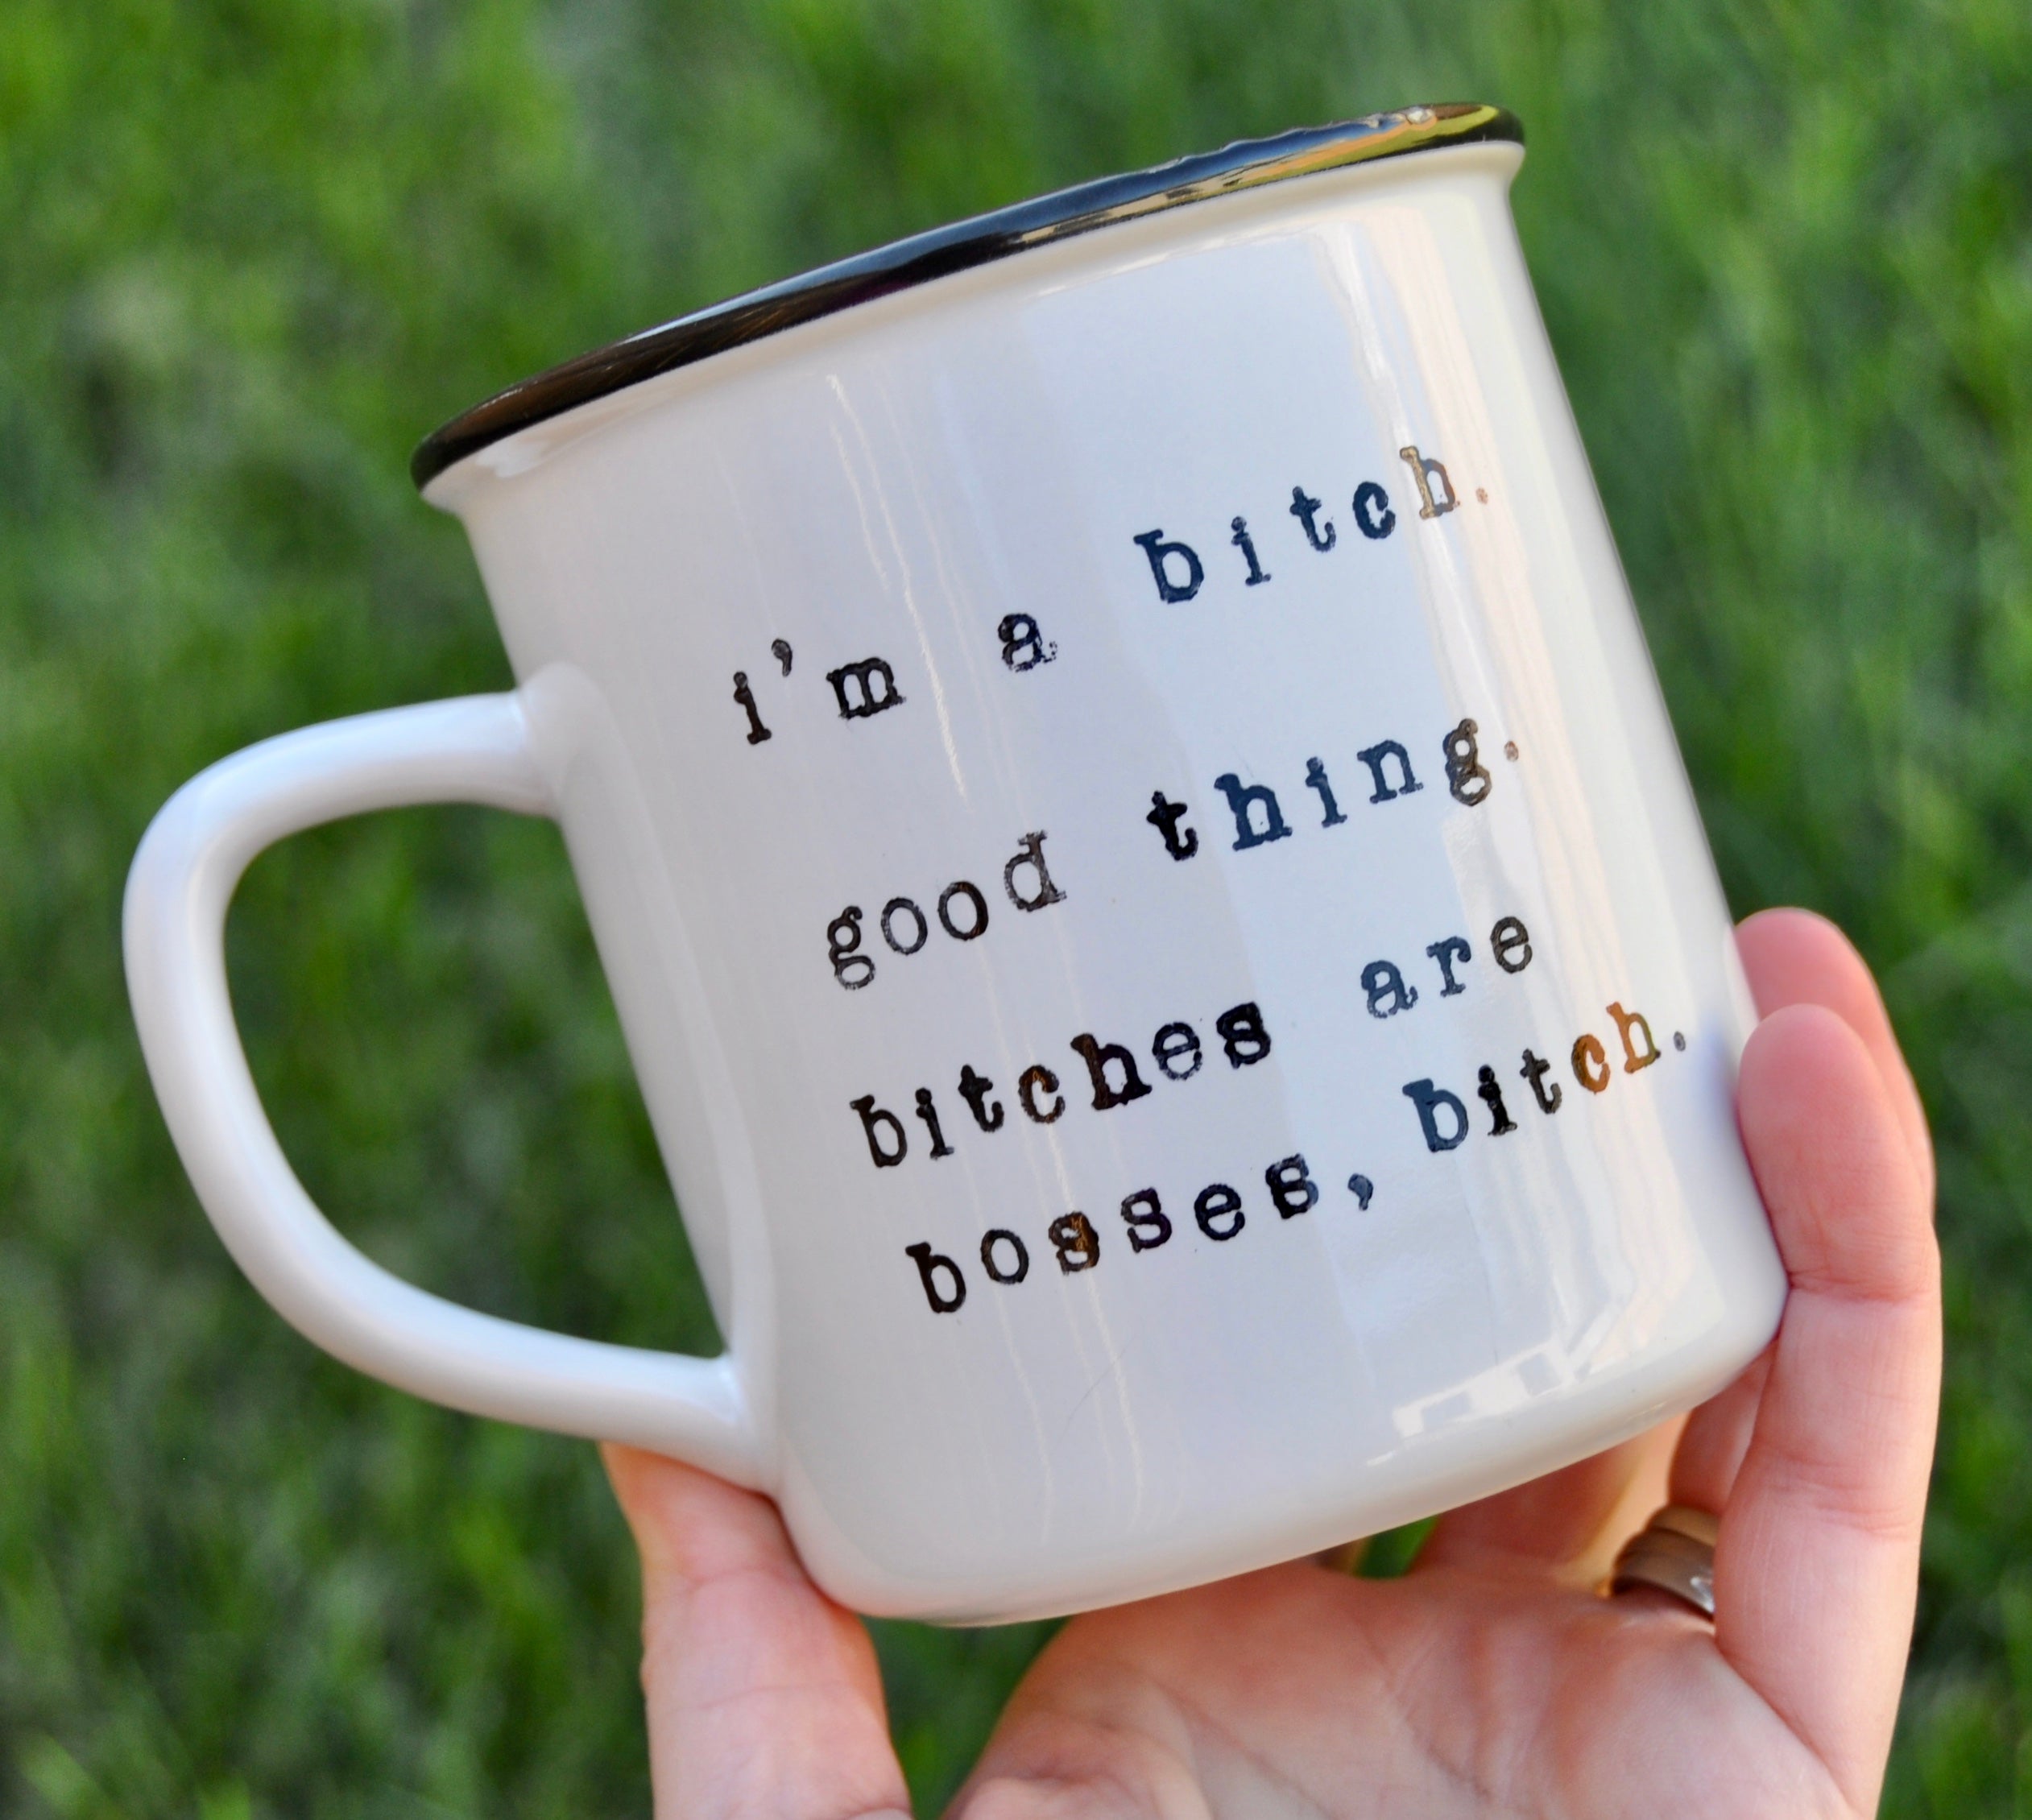 Boss gift bitch mug